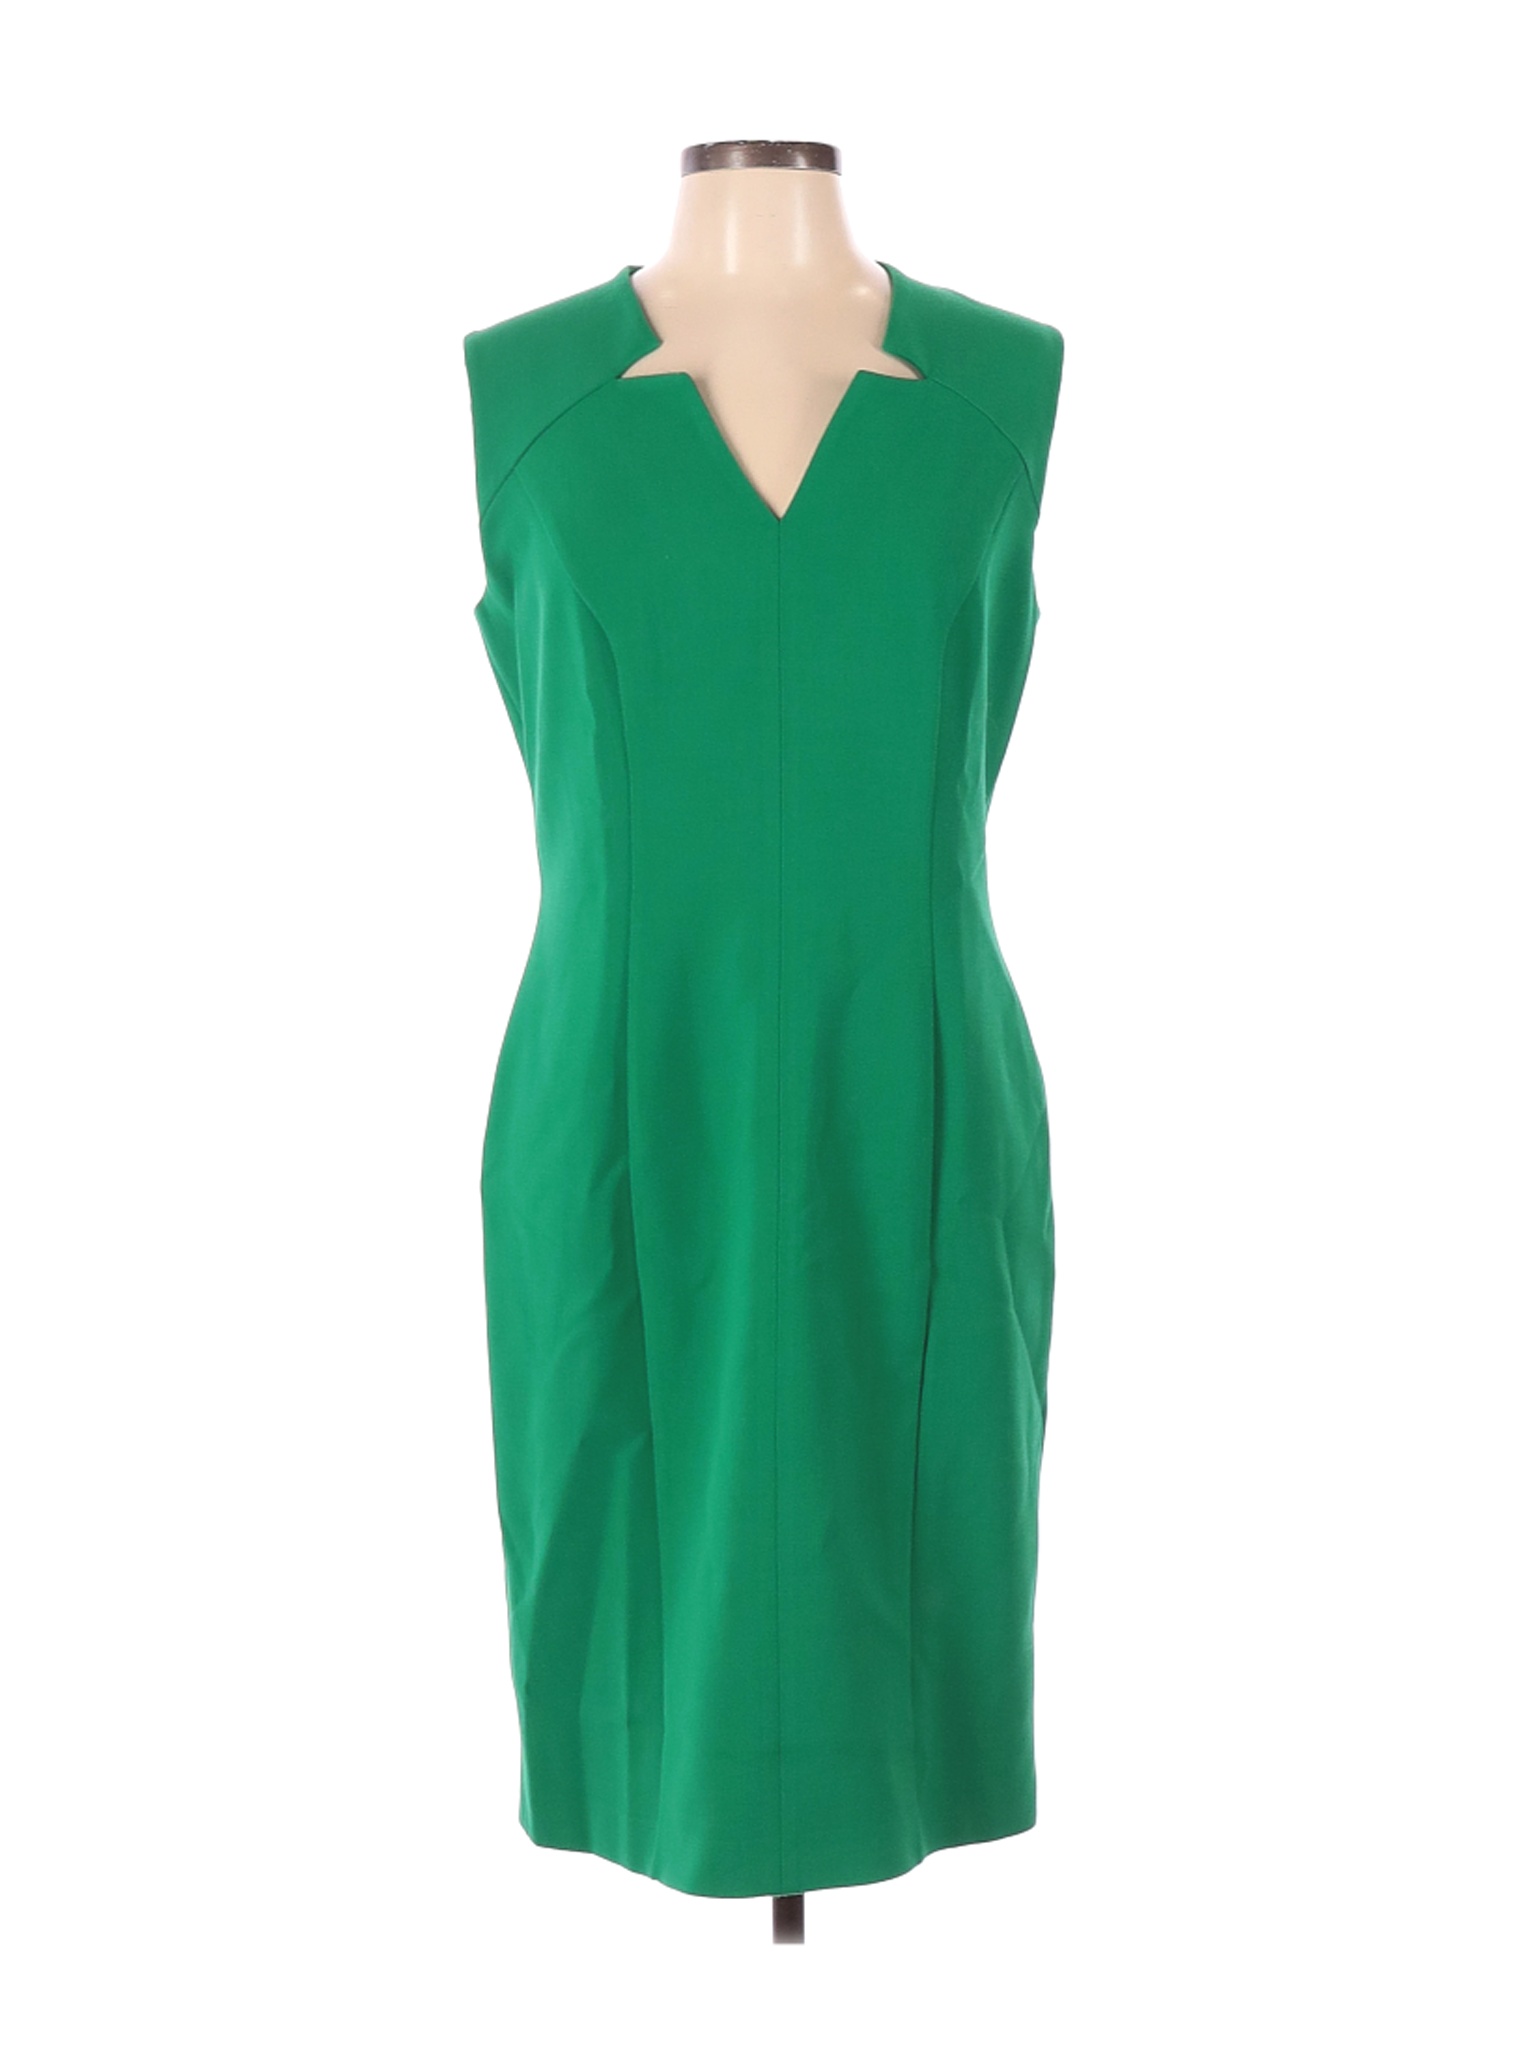 BOSS by HUGO BOSS Women Green Casual Dress 10 | eBay